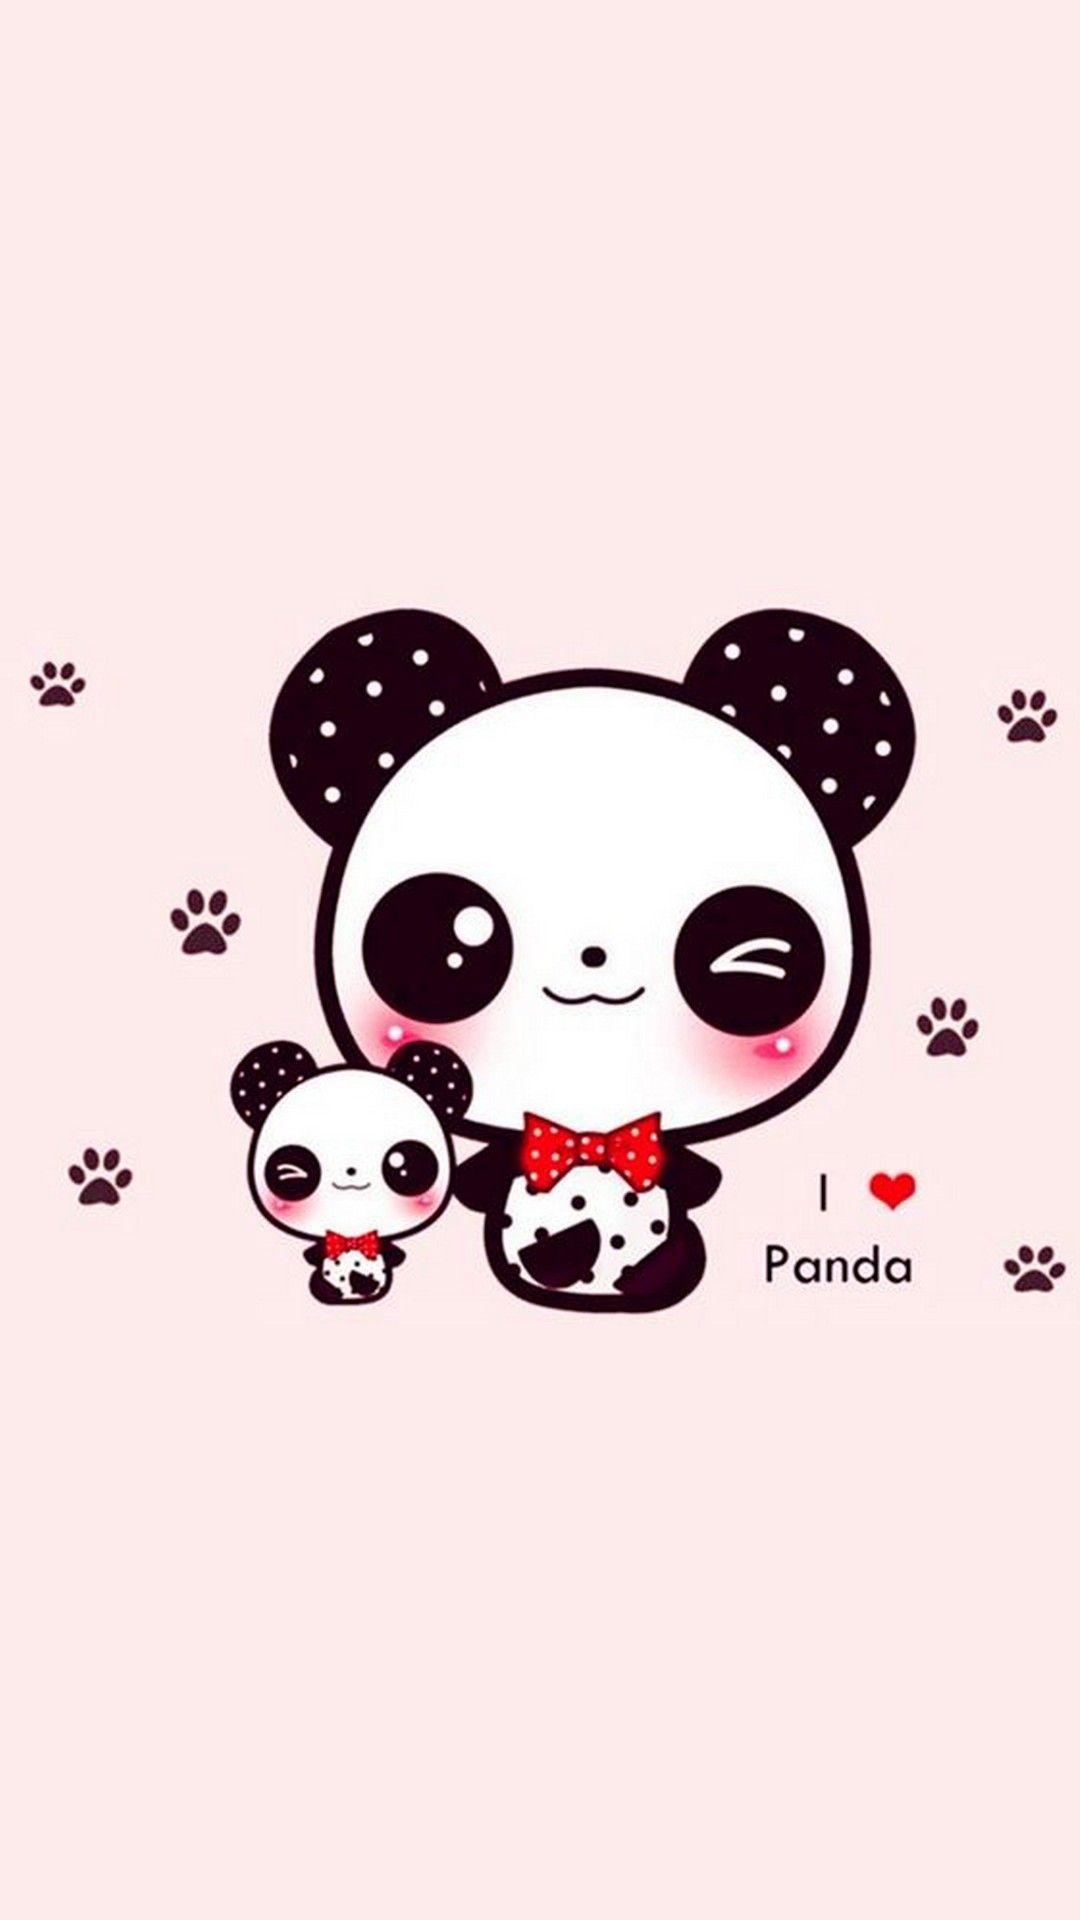 Cute Panda Wallpaper For iPhone. iPhoneWallpaper